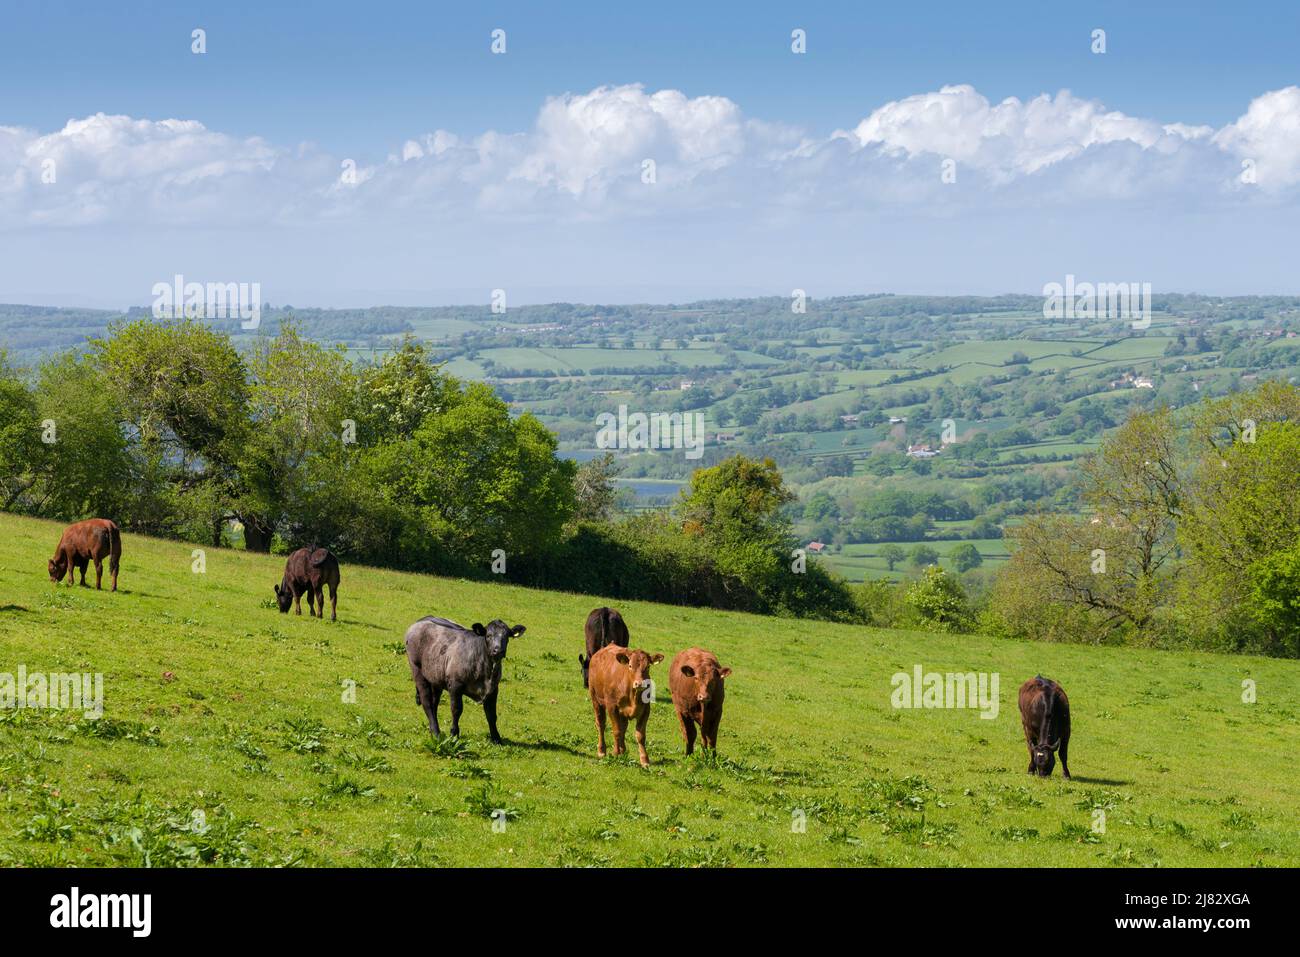 On a entendu parler de jeunes taureaux dans un champ dans le paysage national de Mendip Hills au-dessus de Compton Martin, Somerset, Angleterre. Banque D'Images